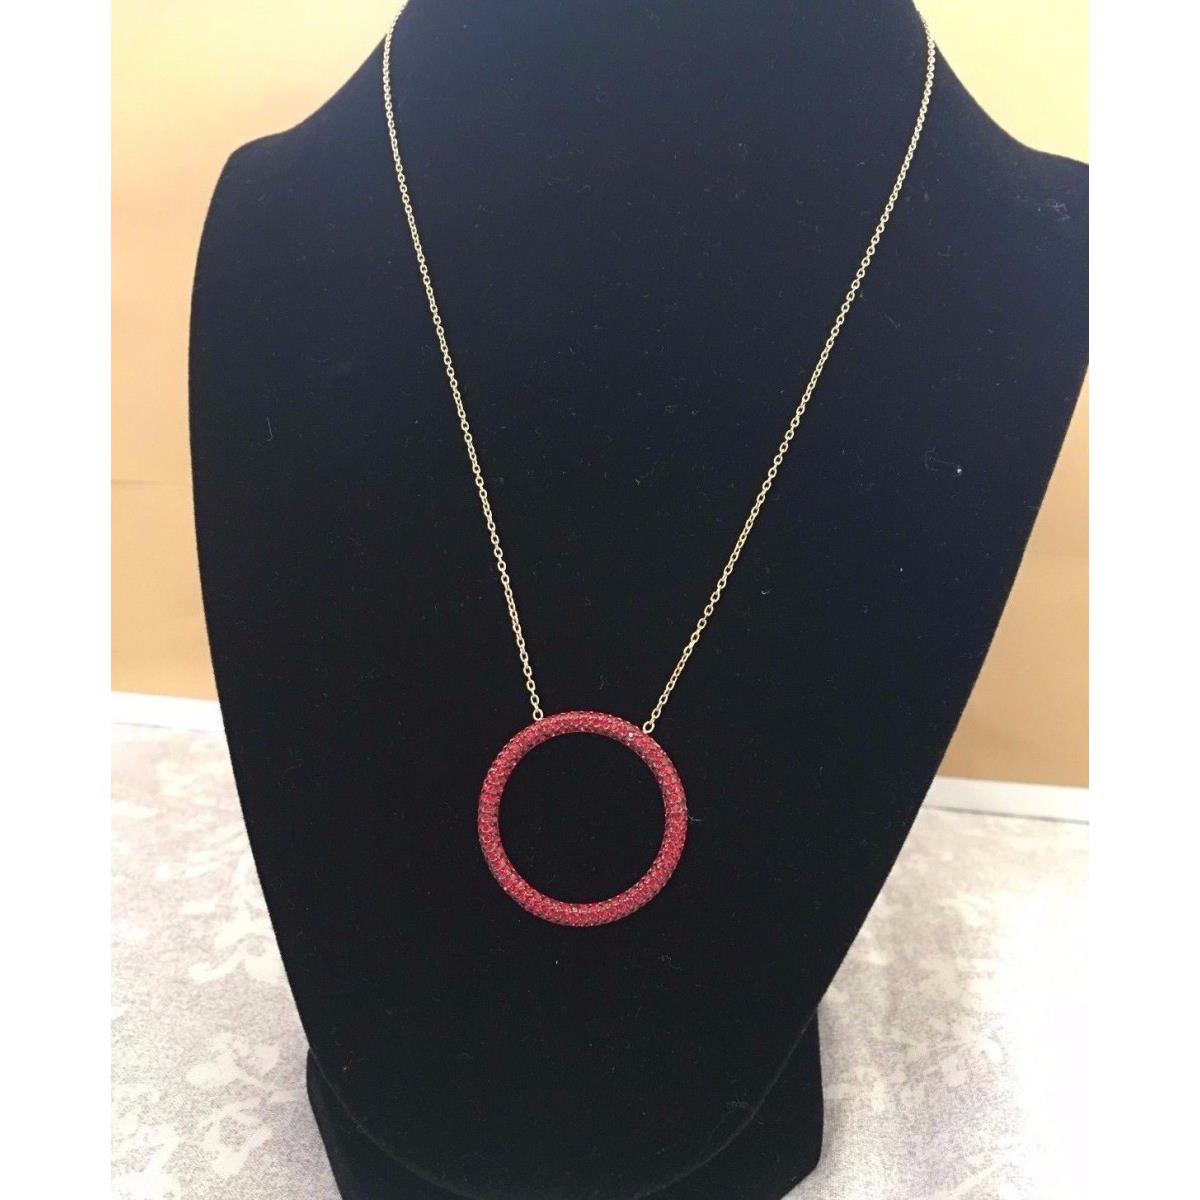 Michael Kors Open Circle Pendant Necklace